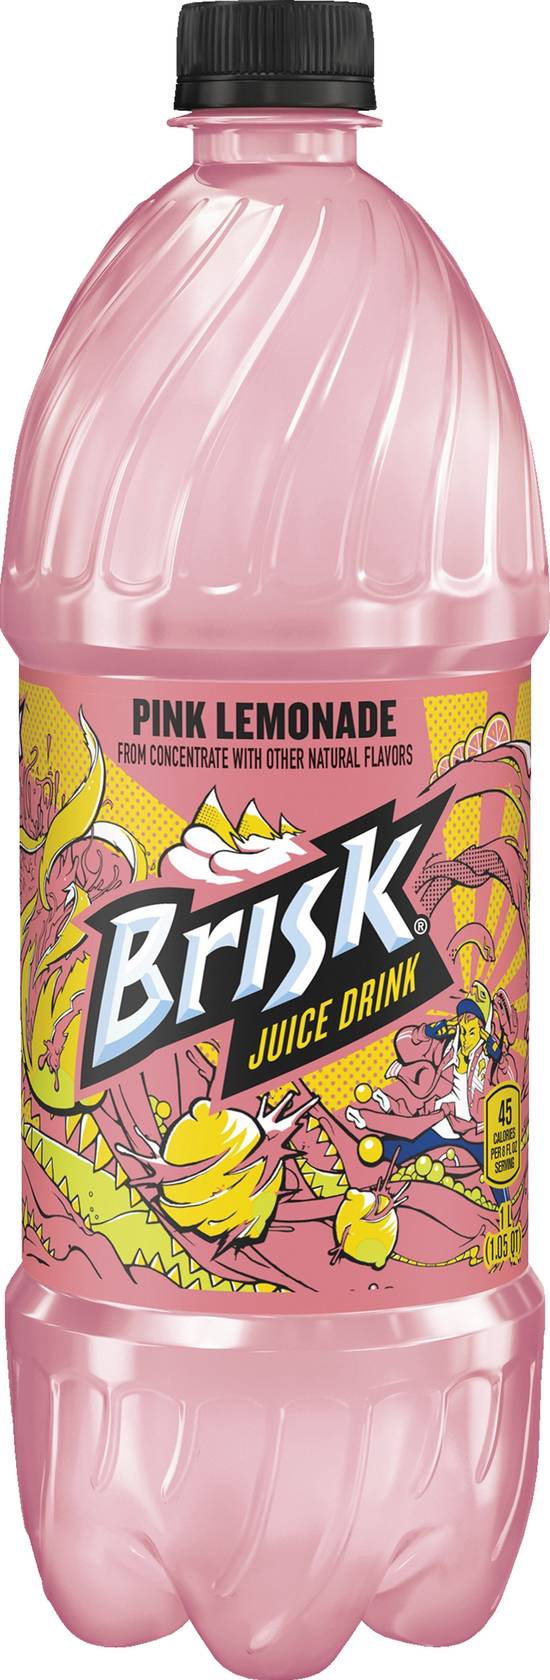 Brisk Pink Lemonade Juice Drink (33.8 fl oz)